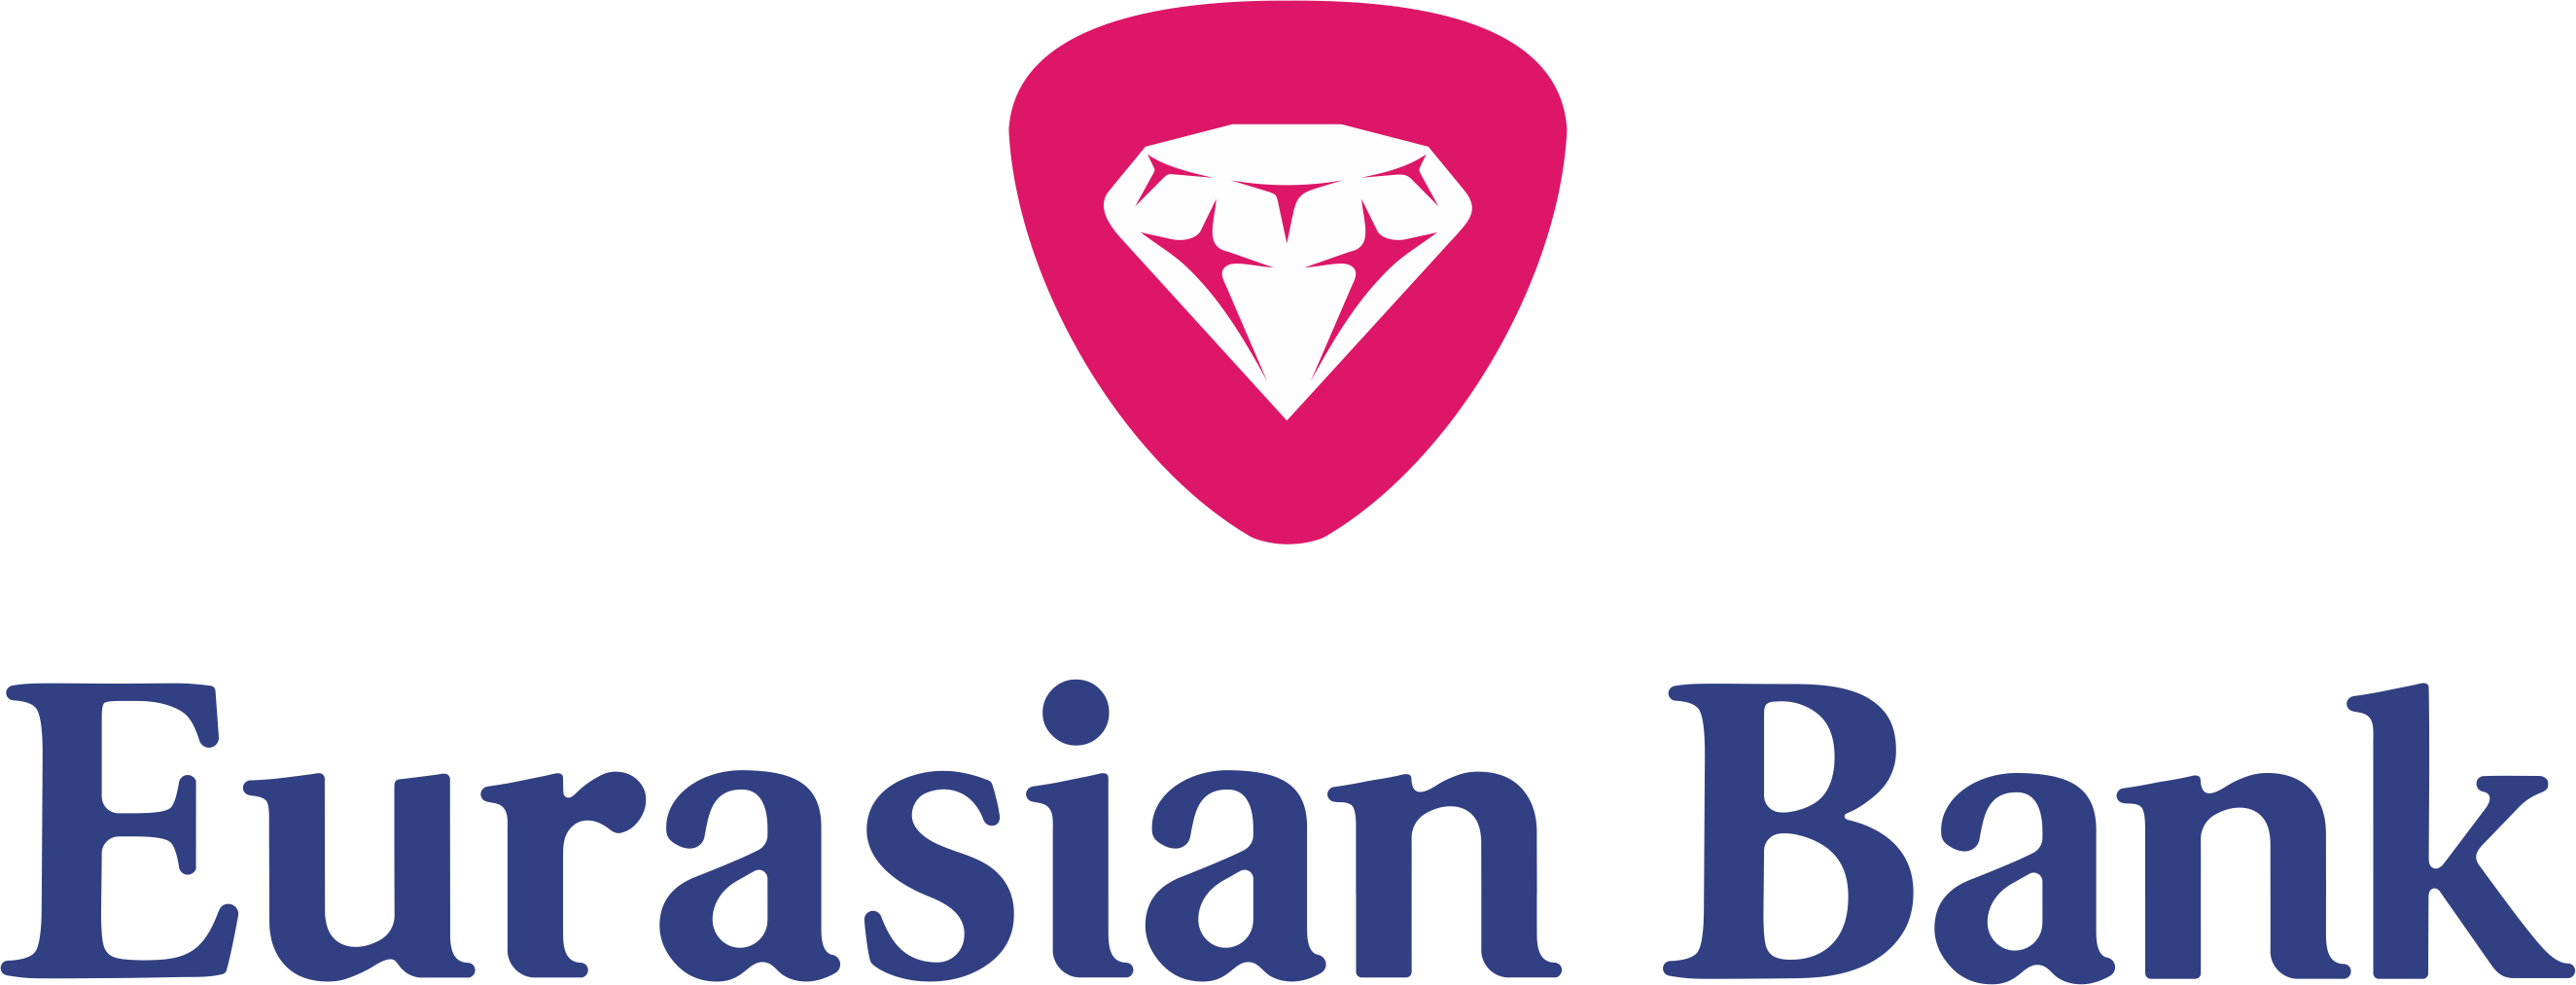 Ао евразия. Евразийский банк. Логотип Евразийского банка. Eurasian Bank лого. Евразийский банк Казахстан.